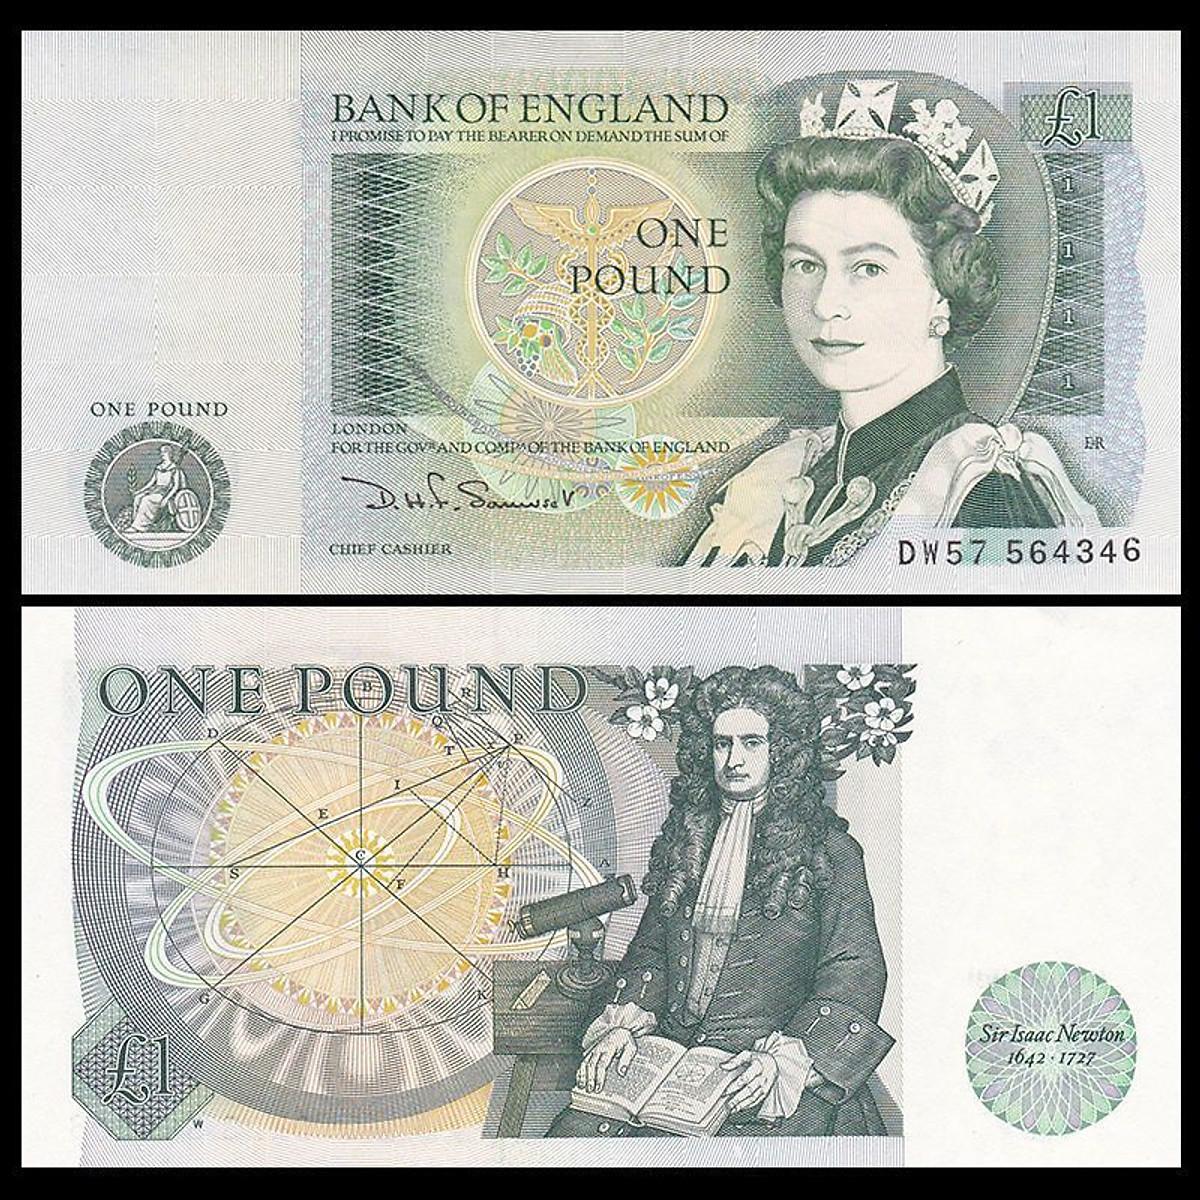 Tiền Anh Quốc mệnh giá 1 pound, mới cứng đẹp như hình